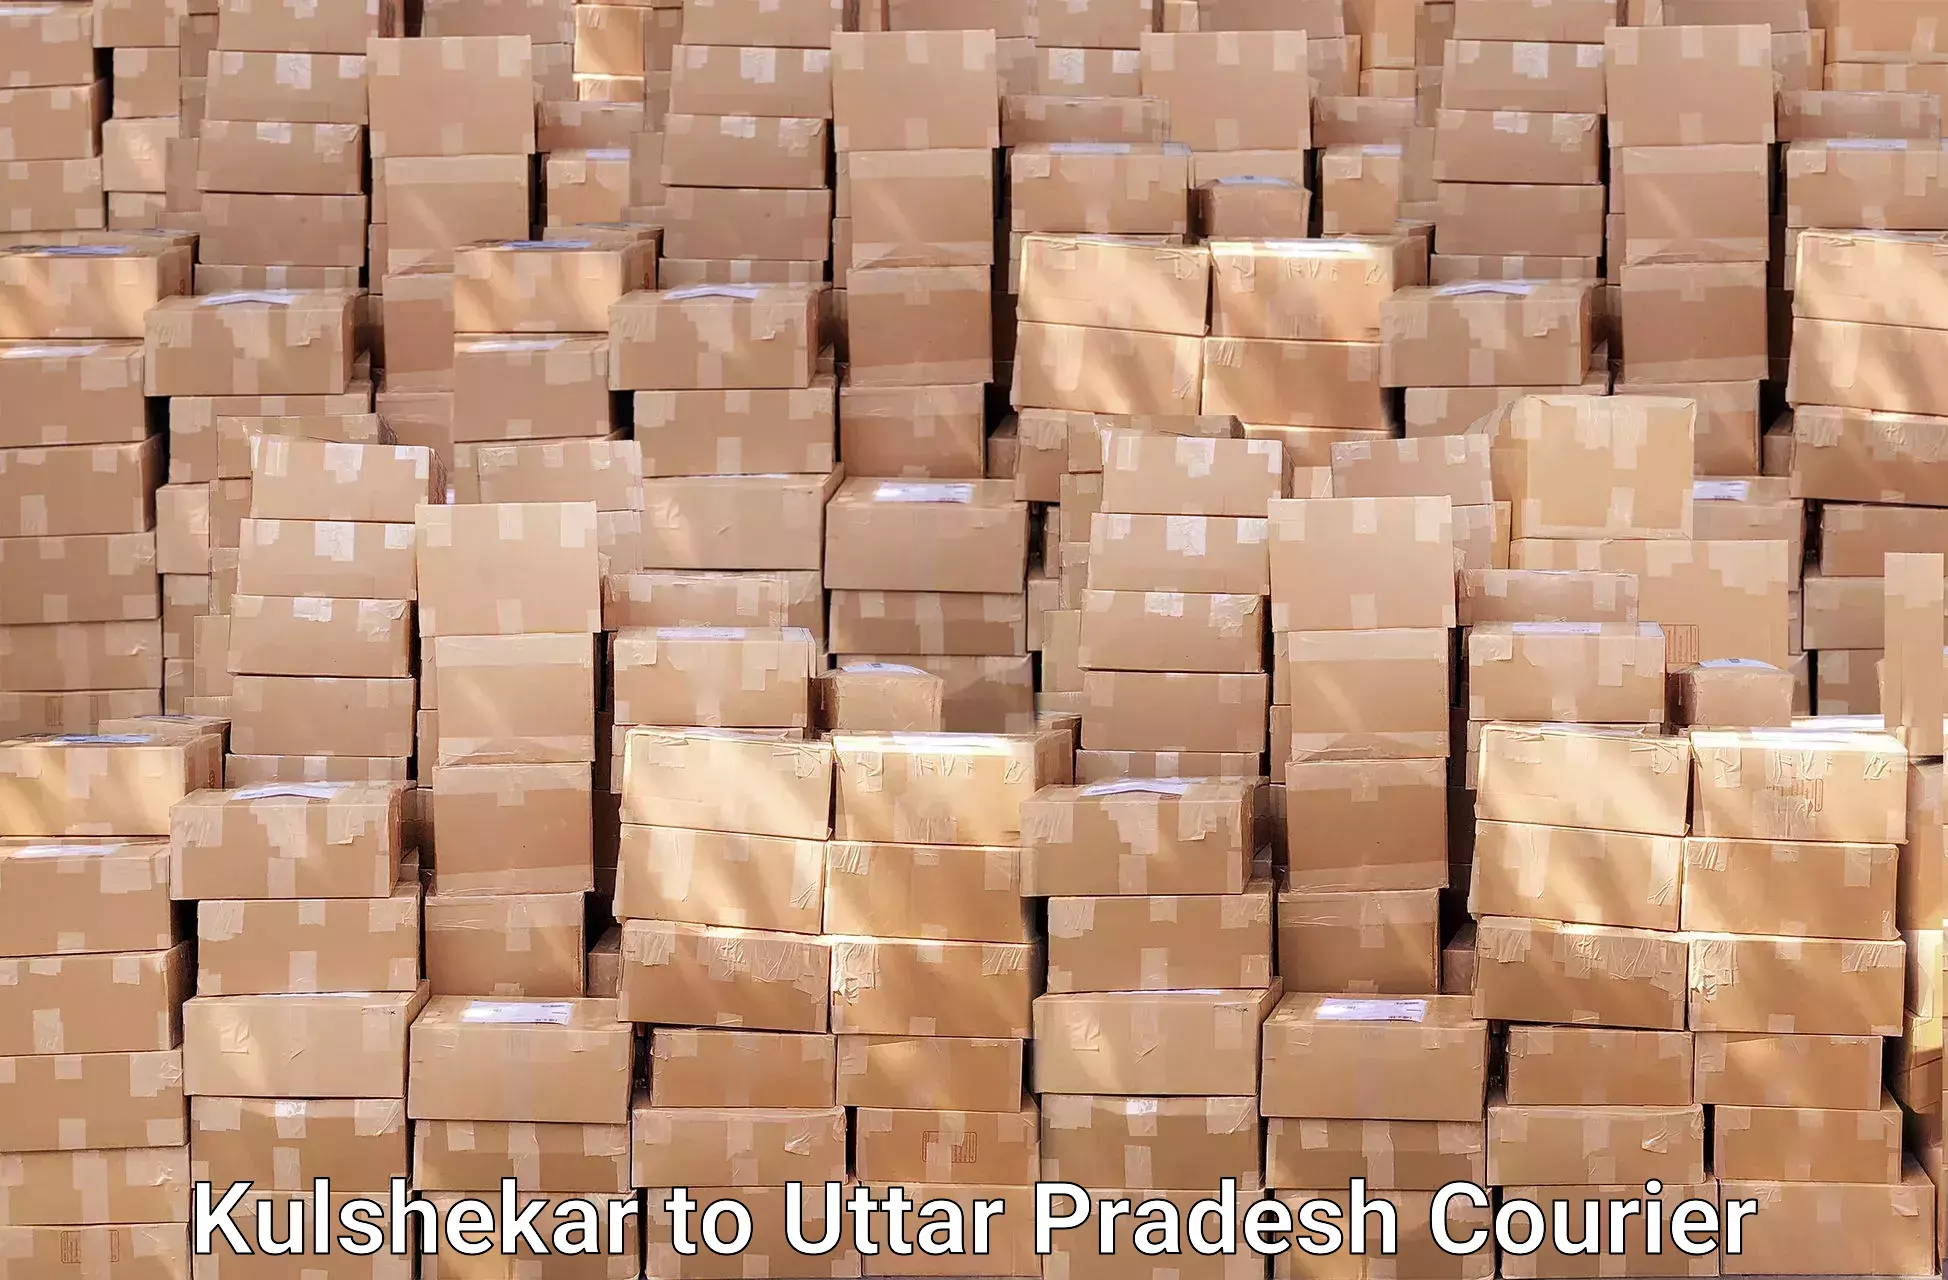 Safe household movers Kulshekar to Uttar Pradesh